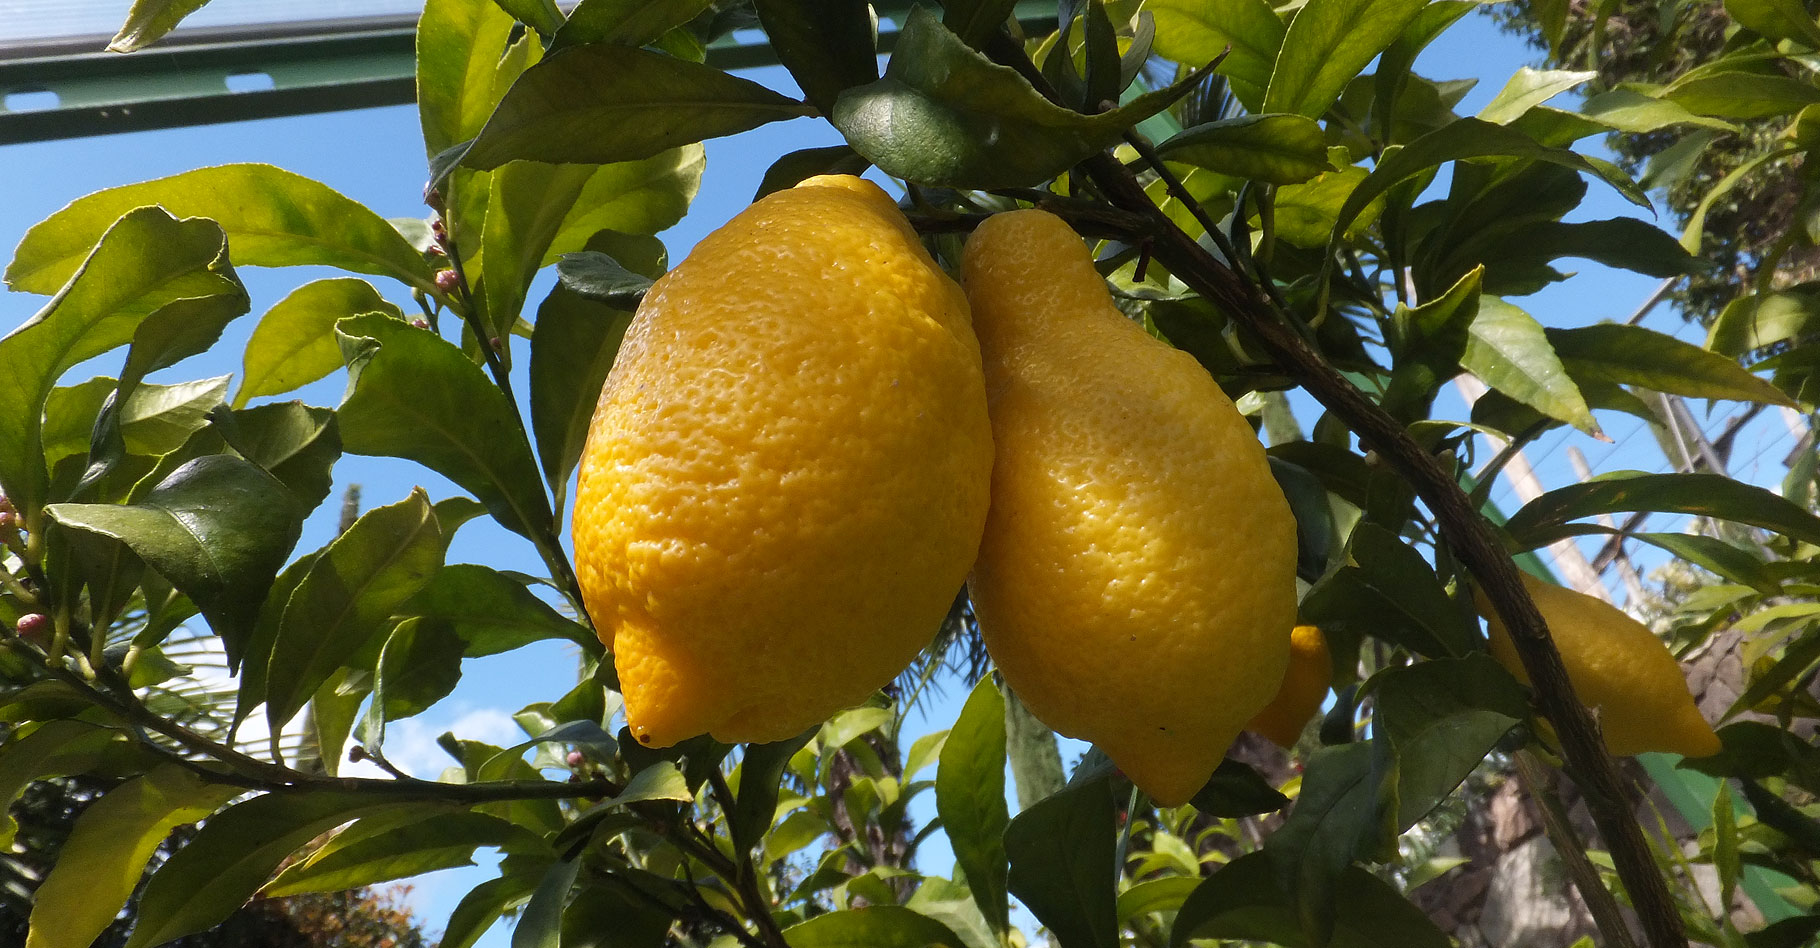 Entretien du citronnier : faut-il le tailler ?